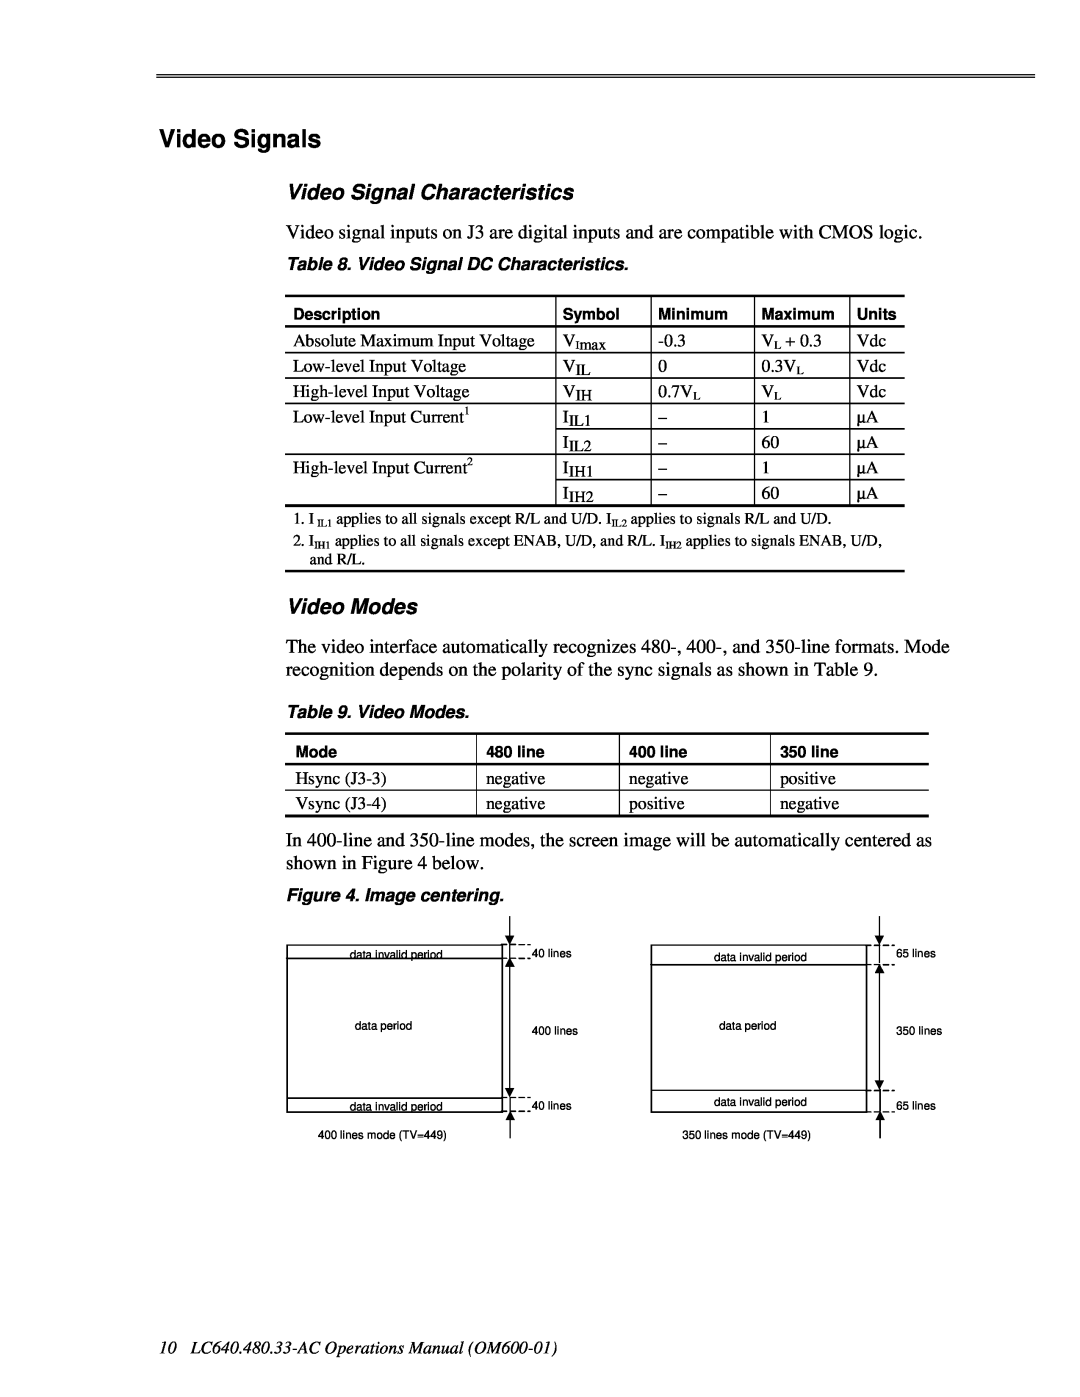 Planar LC640.480.33-AC manual Video Signals, Video Signal Characteristics, Video Modes 